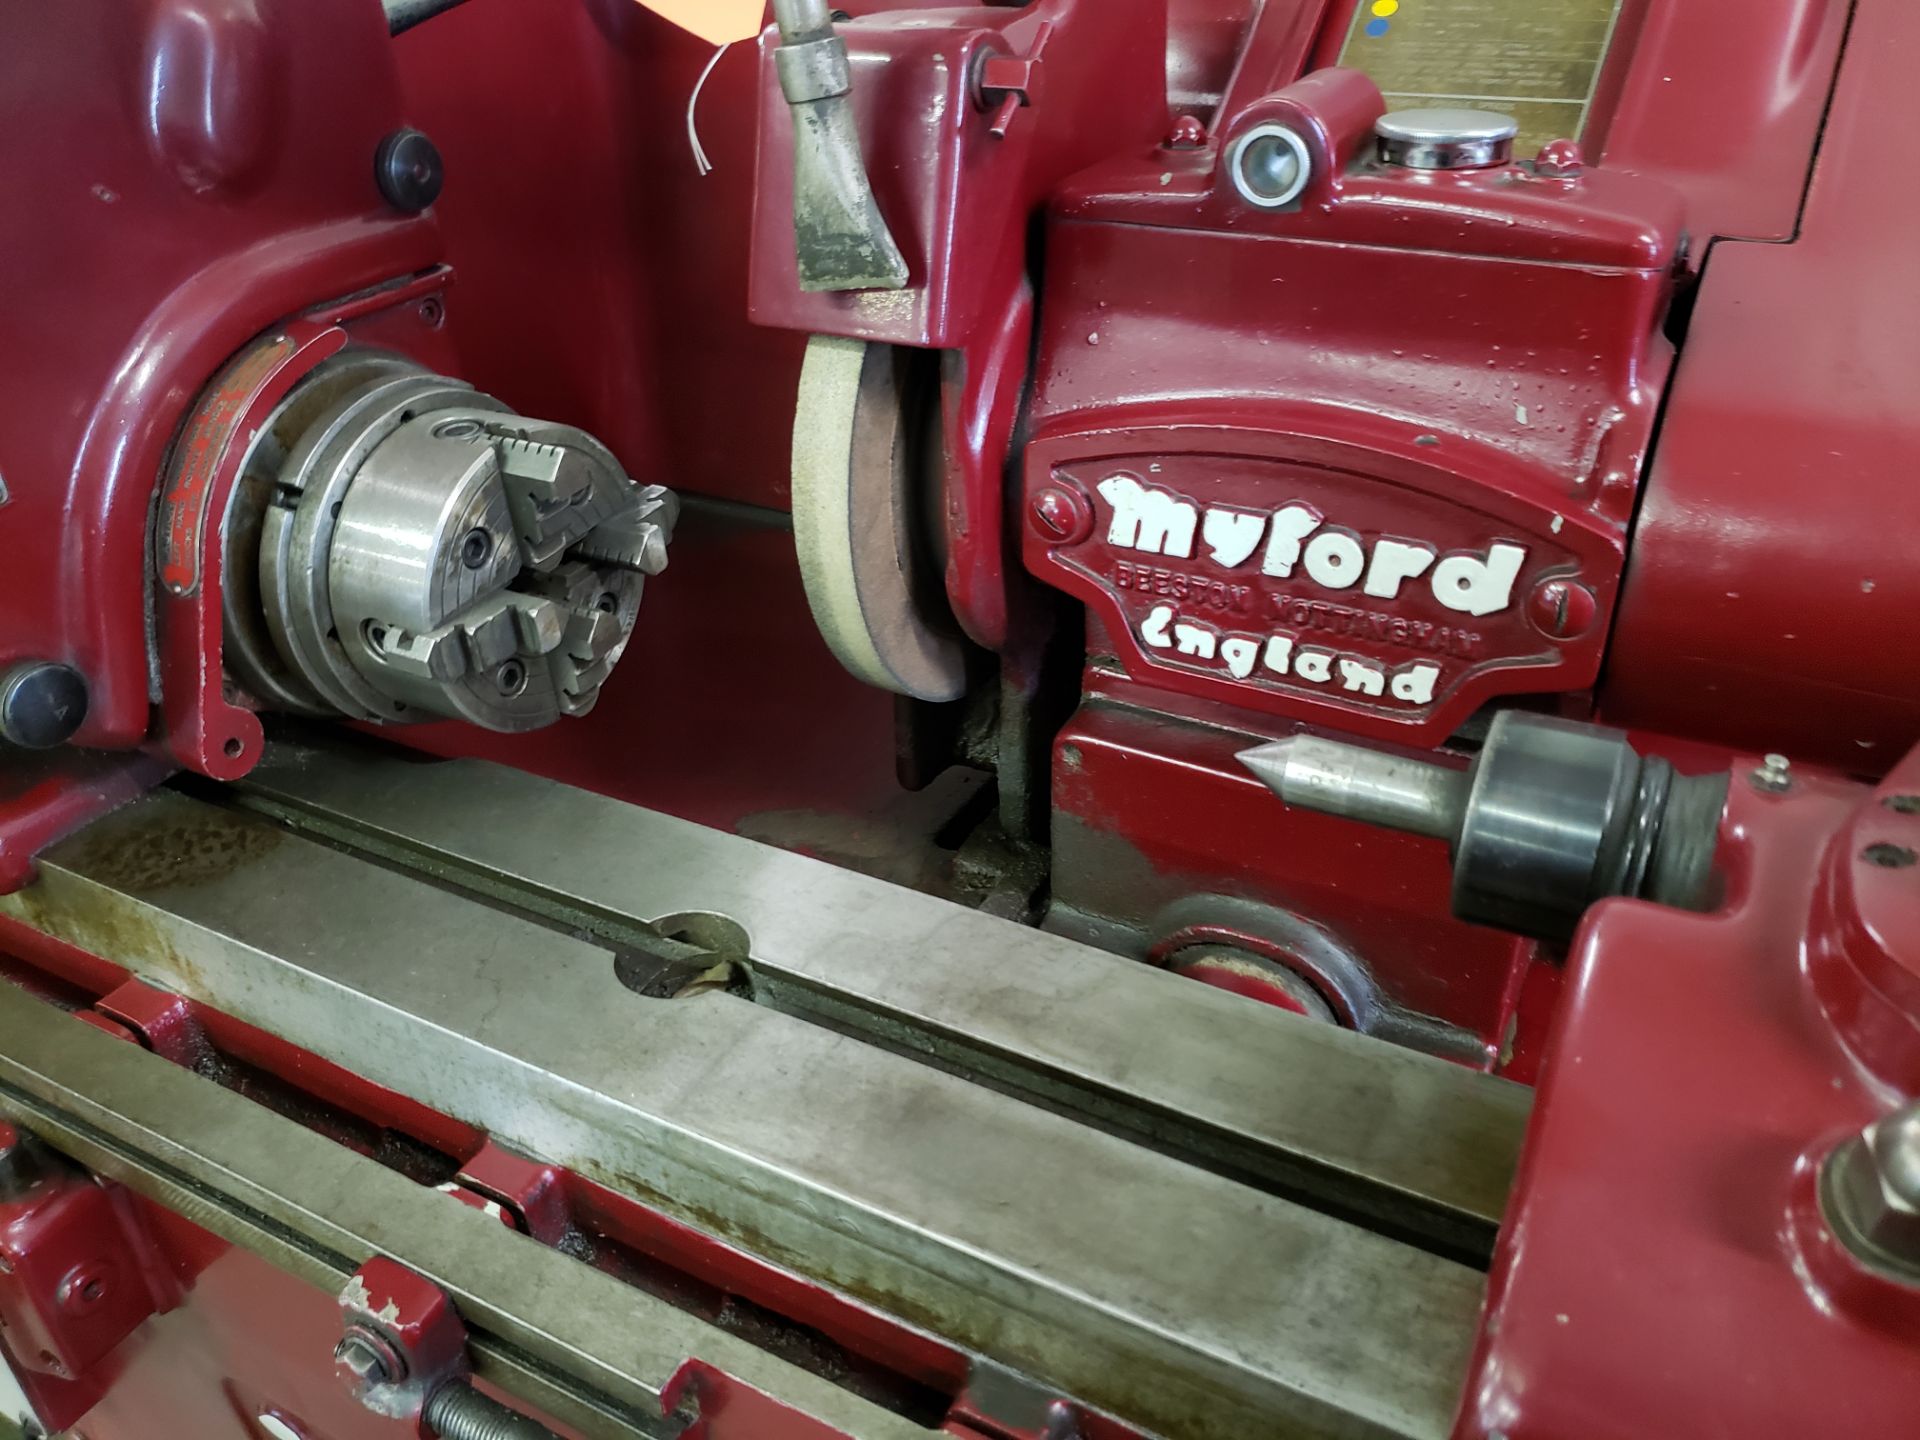 MYFORD CYLINDRICAL GRINDER MODEL-612 ¼HP SPINDLE SPEED 2200-2500 RPM - Bild 2 aus 2